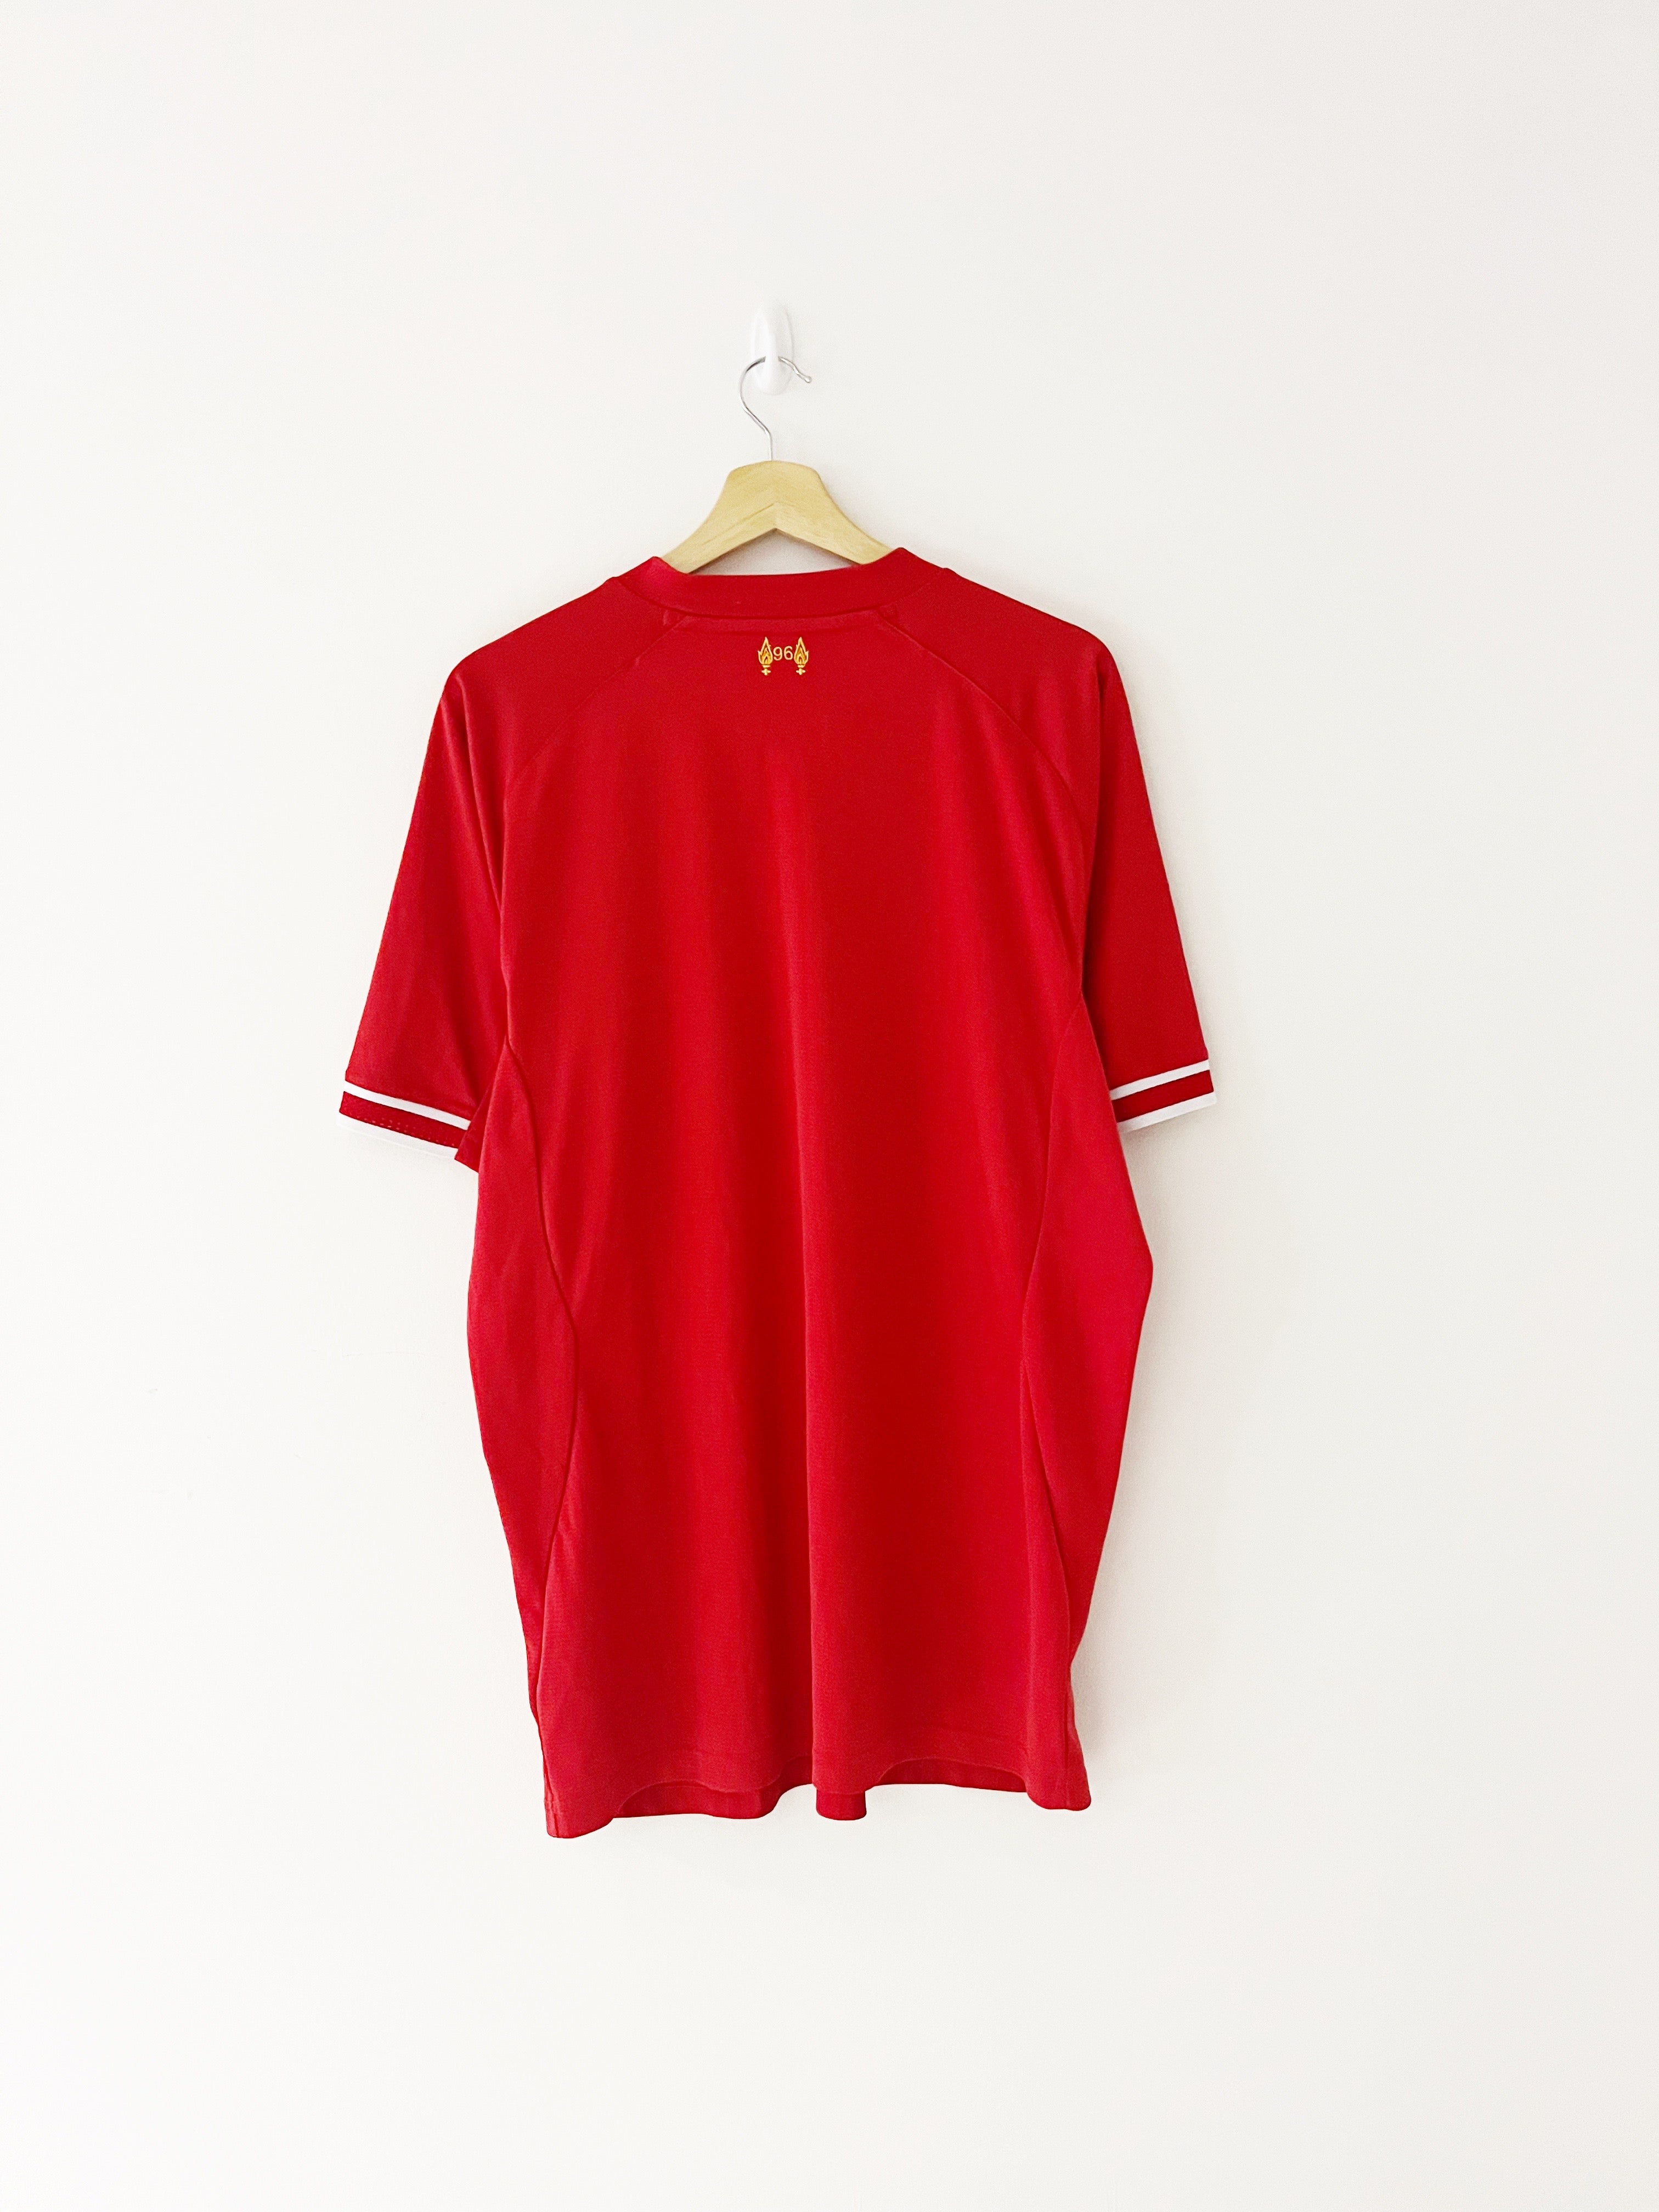 Camiseta de local del Liverpool 2013/14 (XL) 8/10